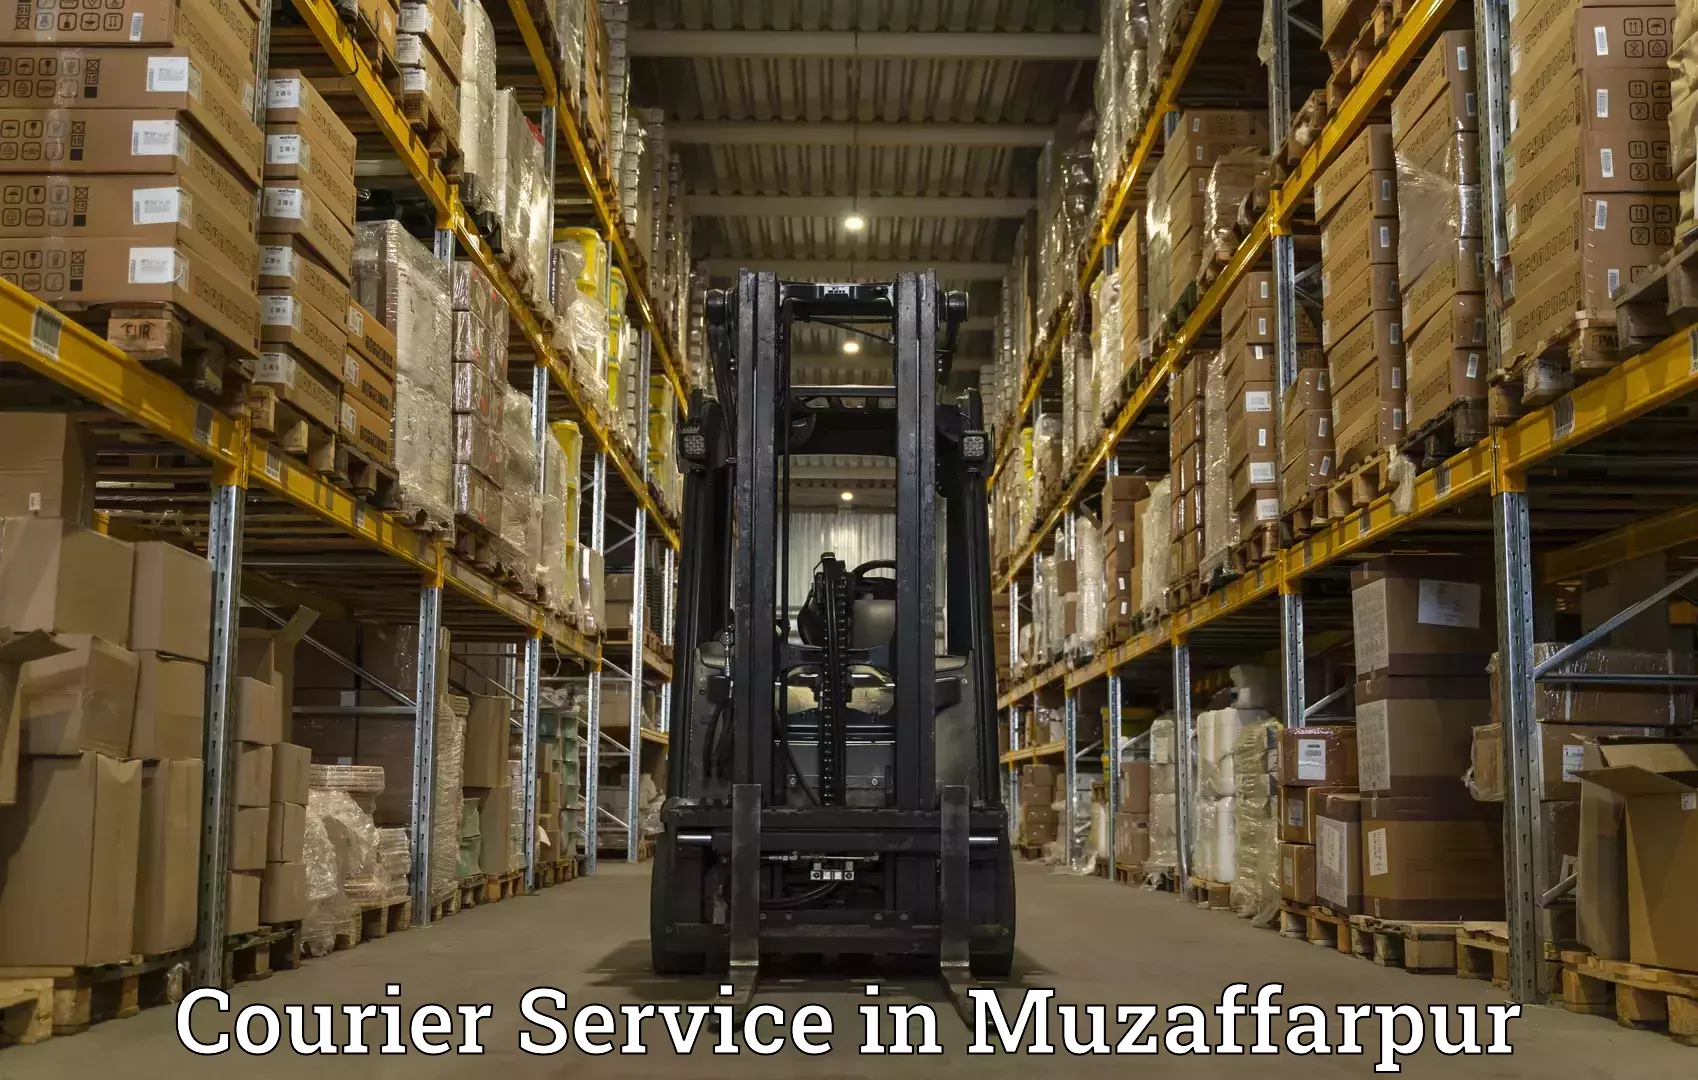 Express delivery network in Muzaffarpur